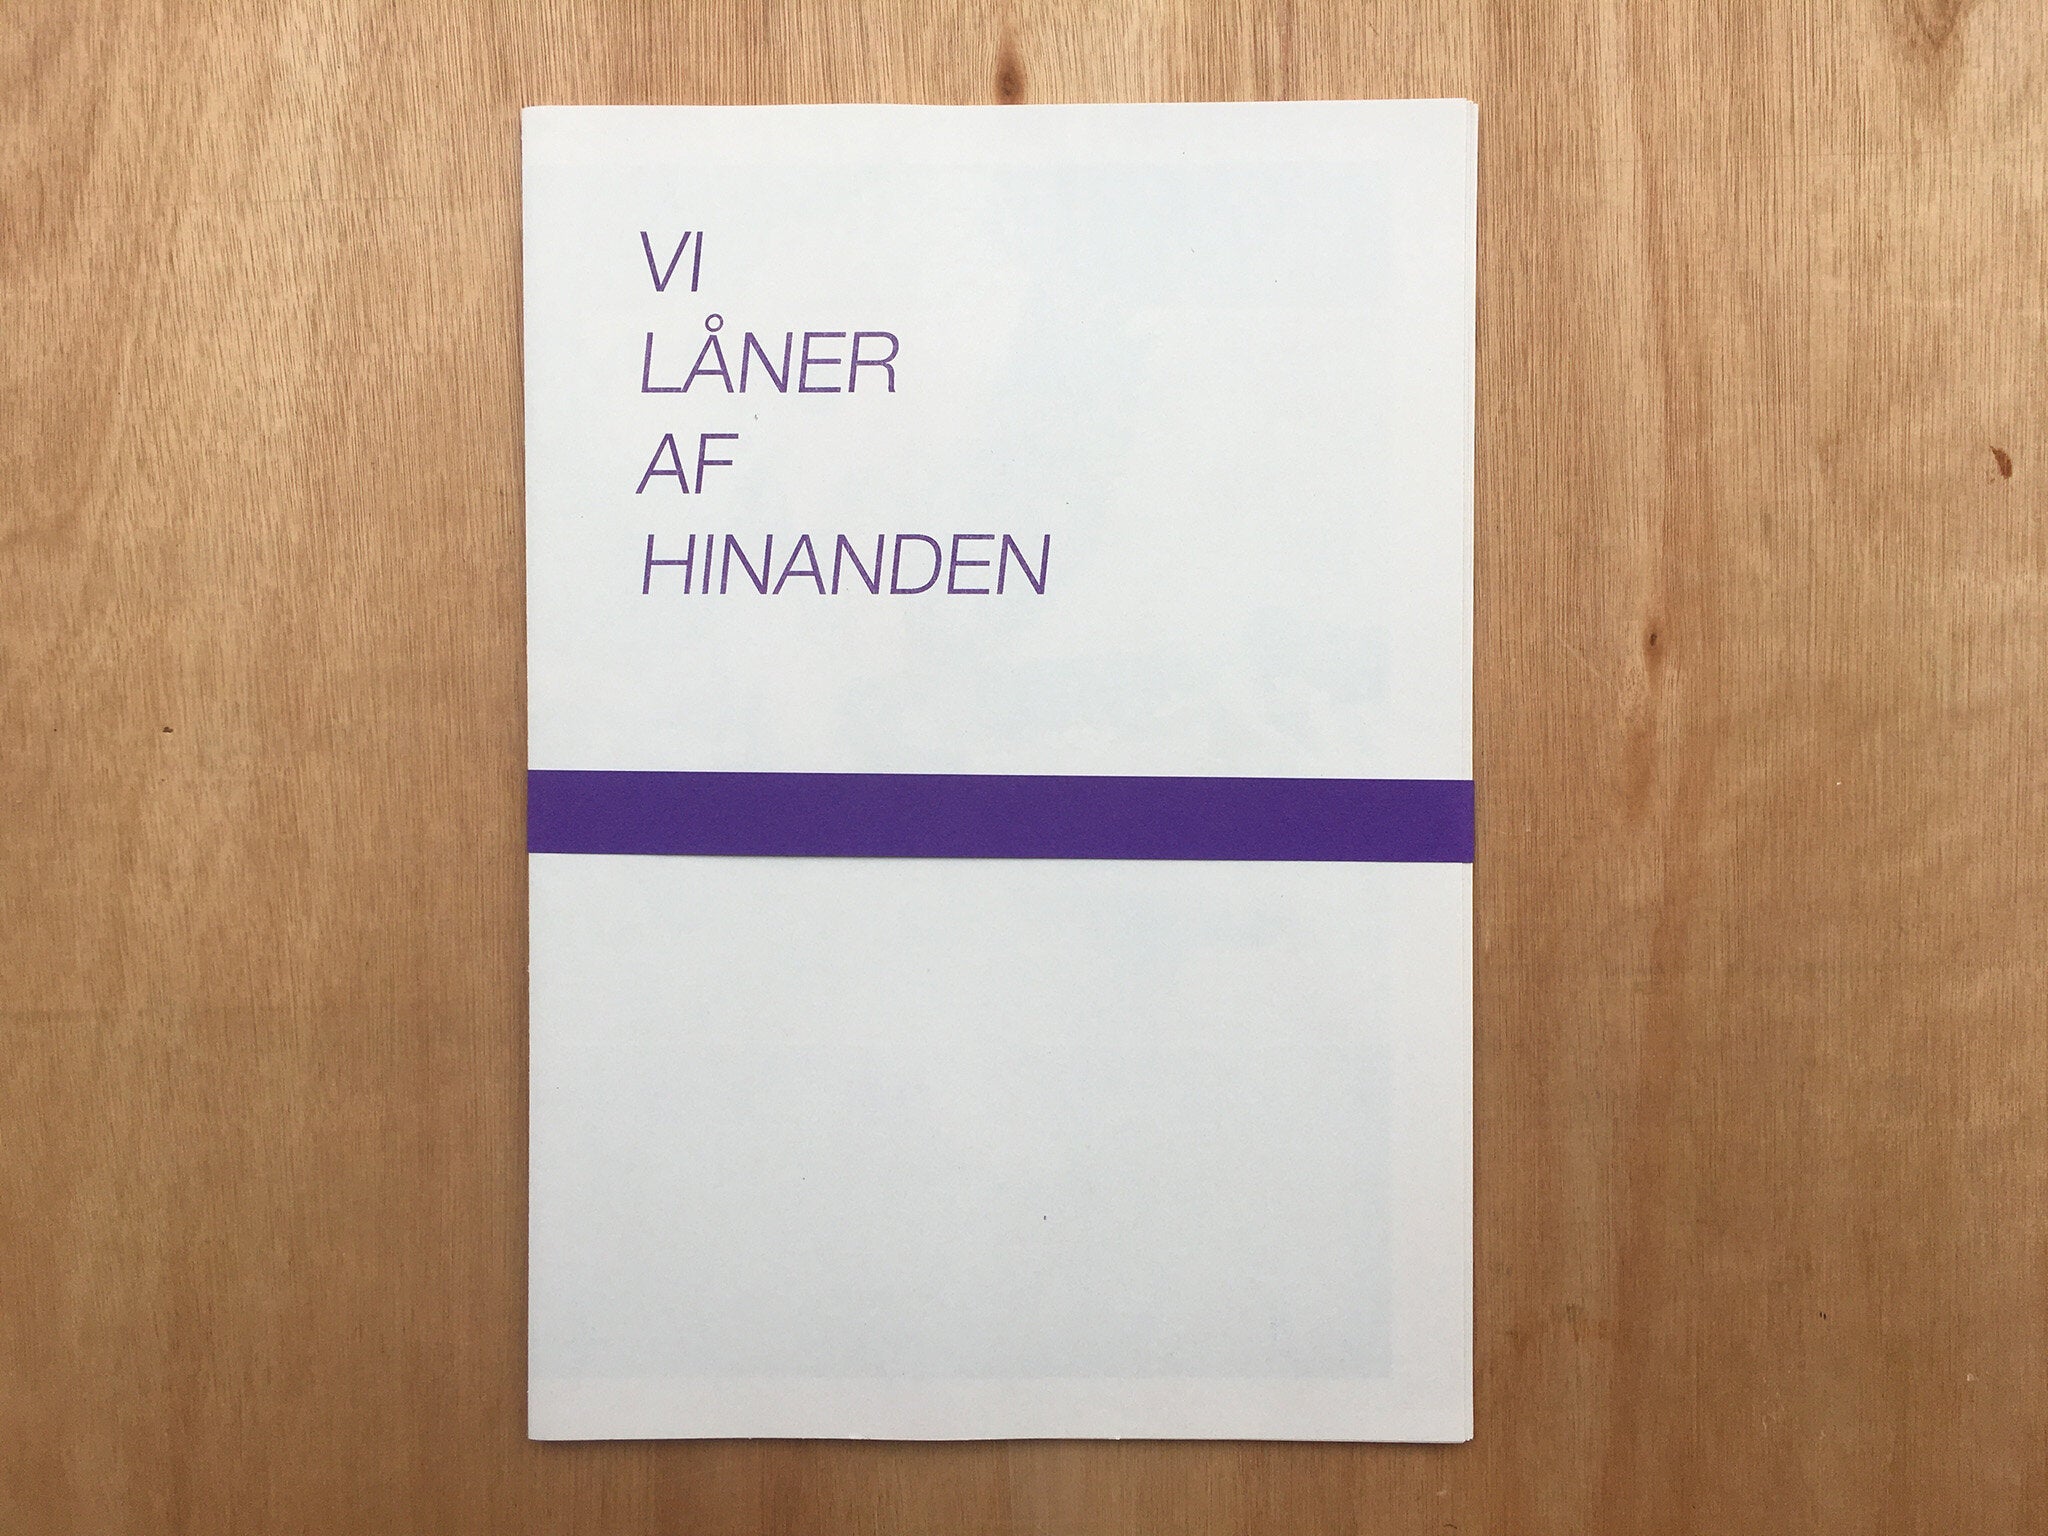 VI LÅNER AF HINANDEN by Maja Liisberg Poulsen